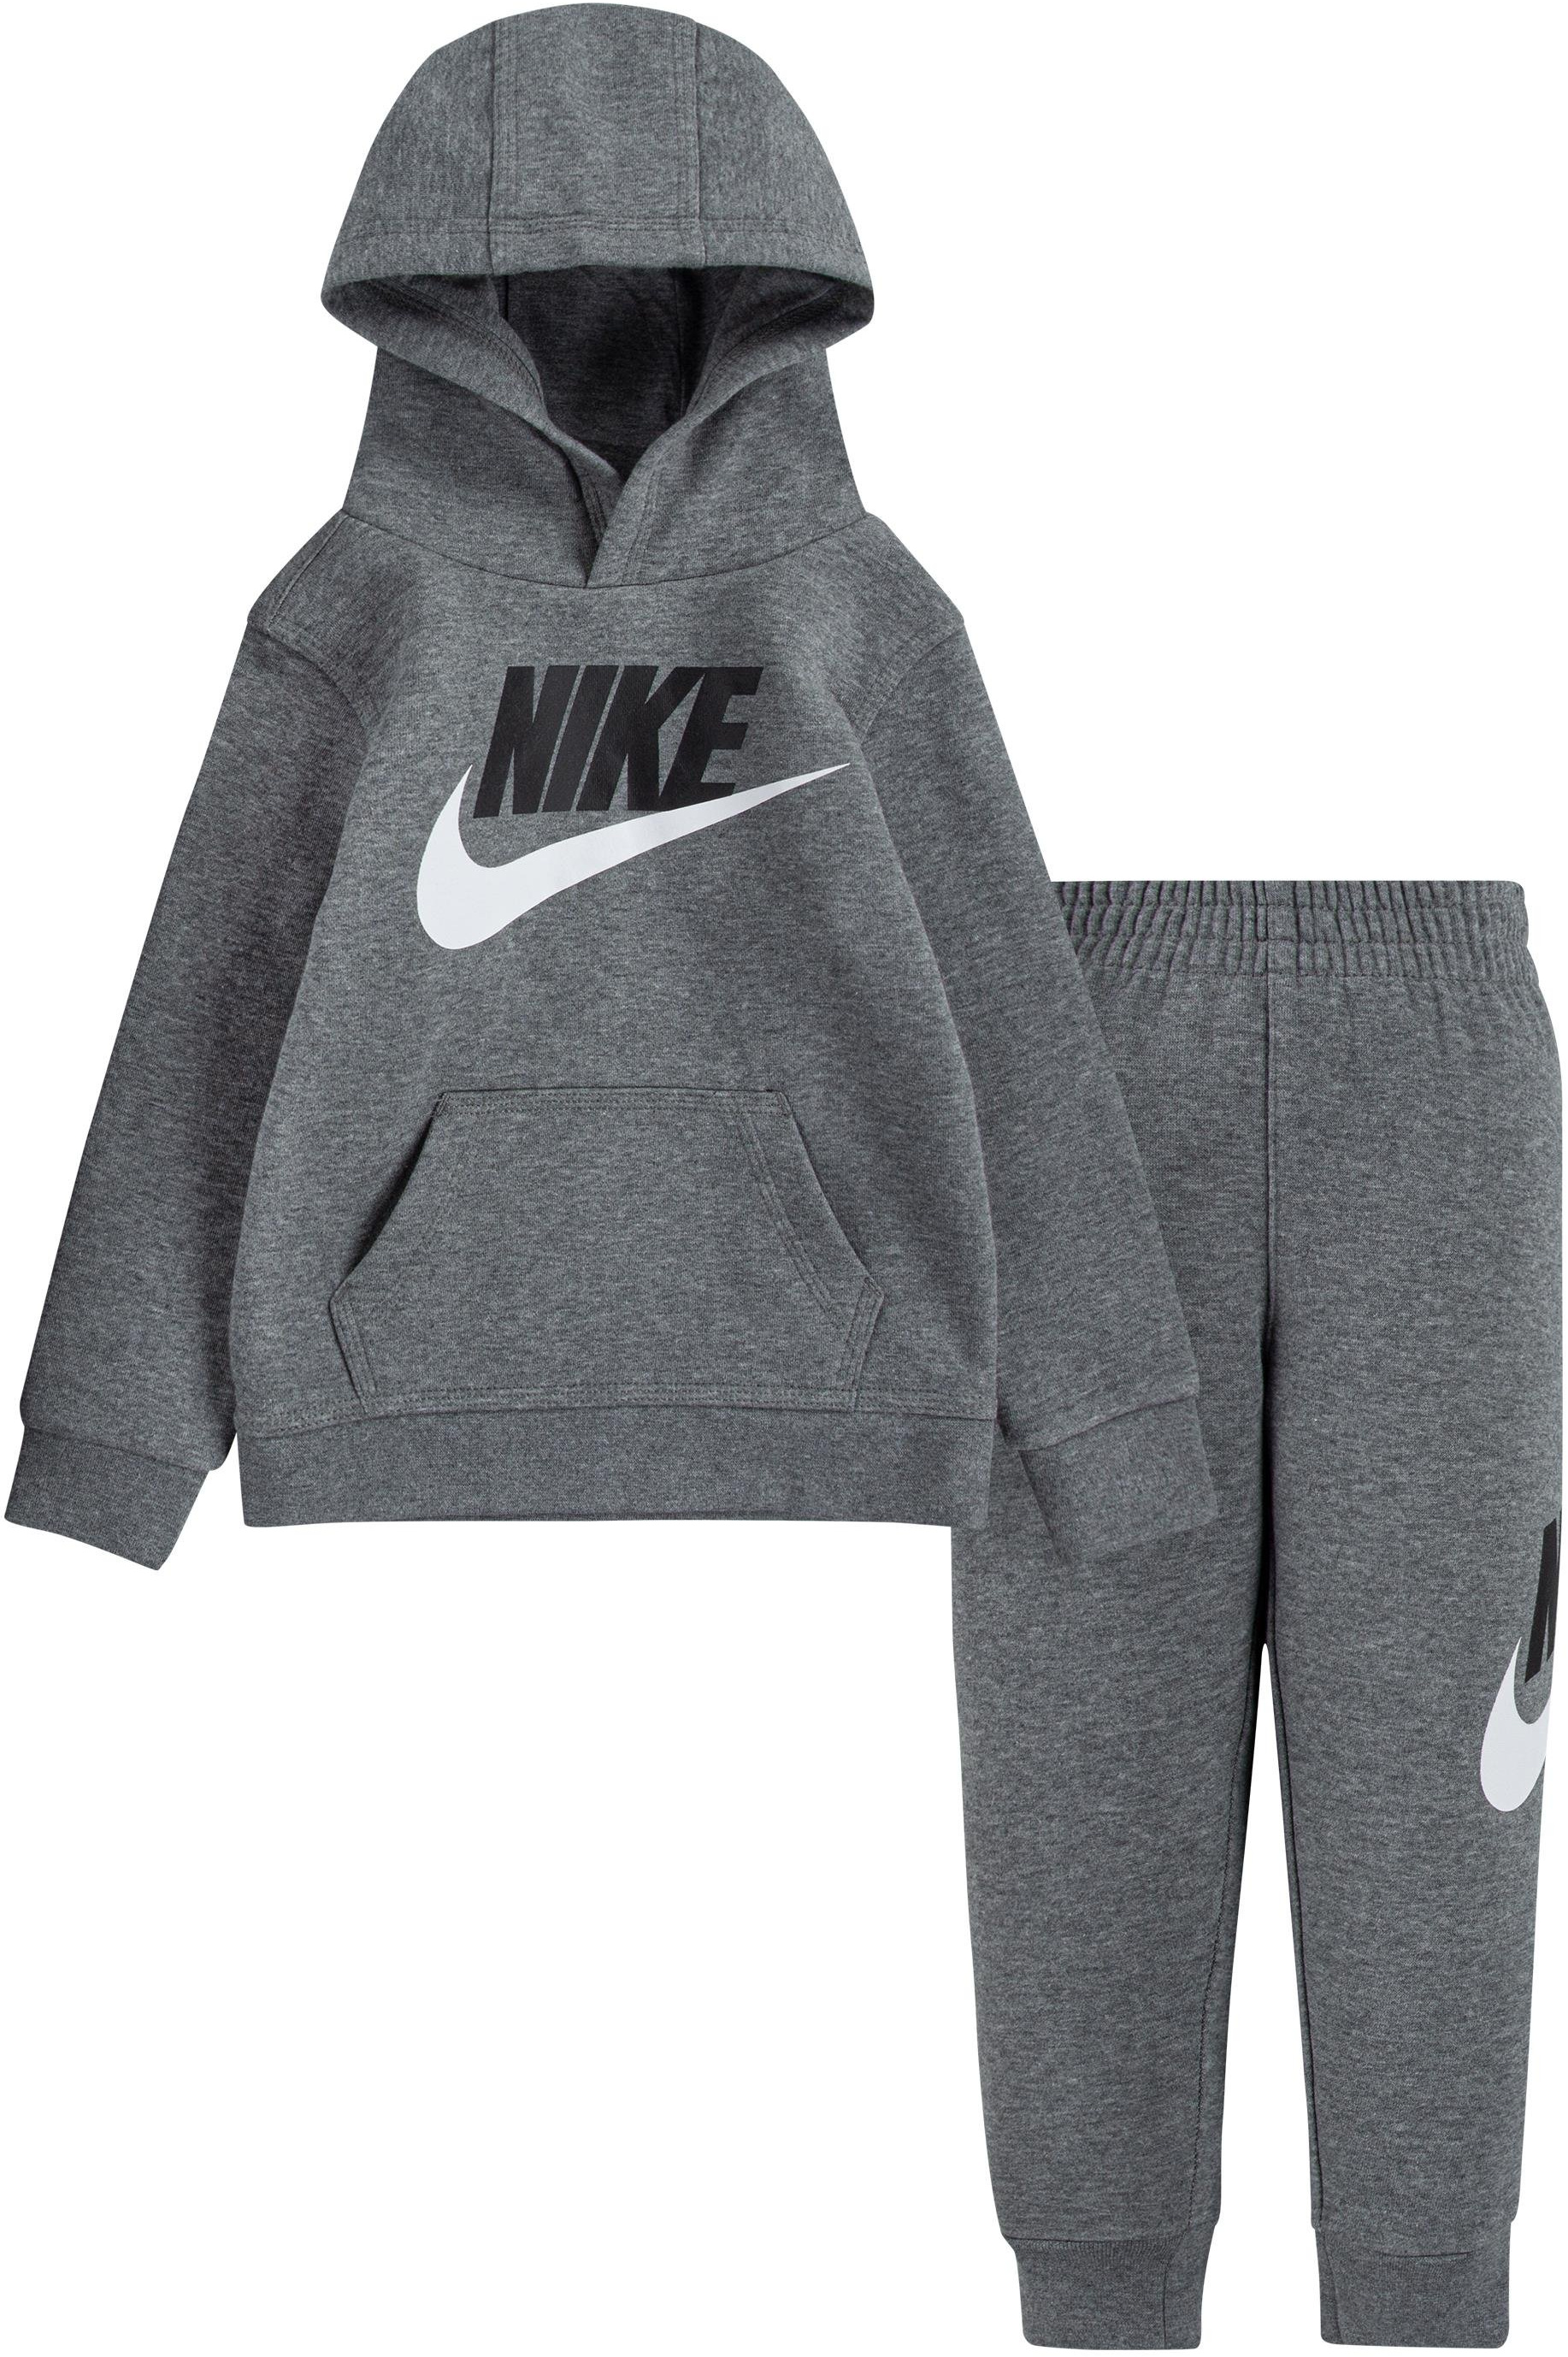 Комплект для бега с пуловером Club HBR (для малышей) Nike Kids